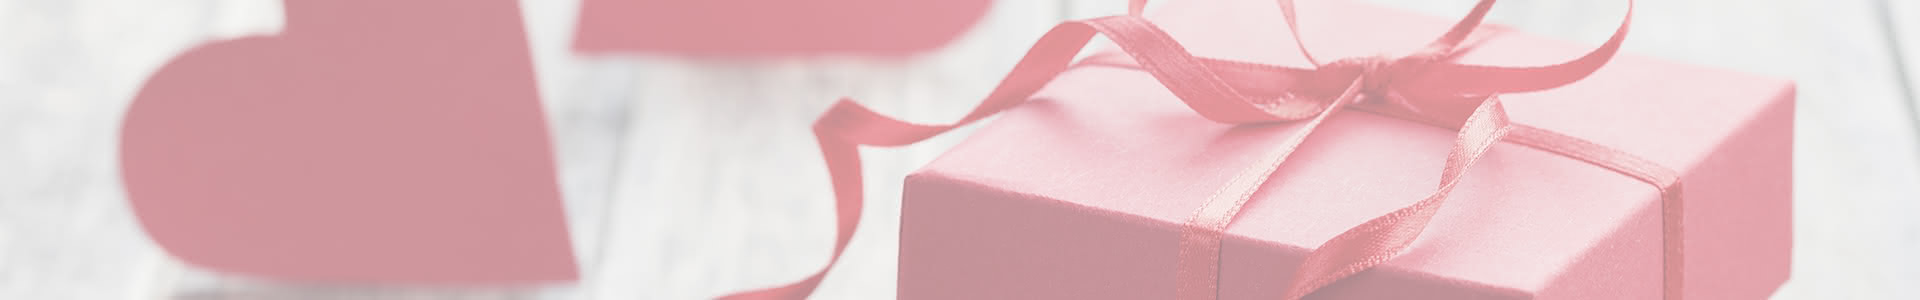 Cinco ideas de regalo personalizadas y originales para triunfar en San Valentín